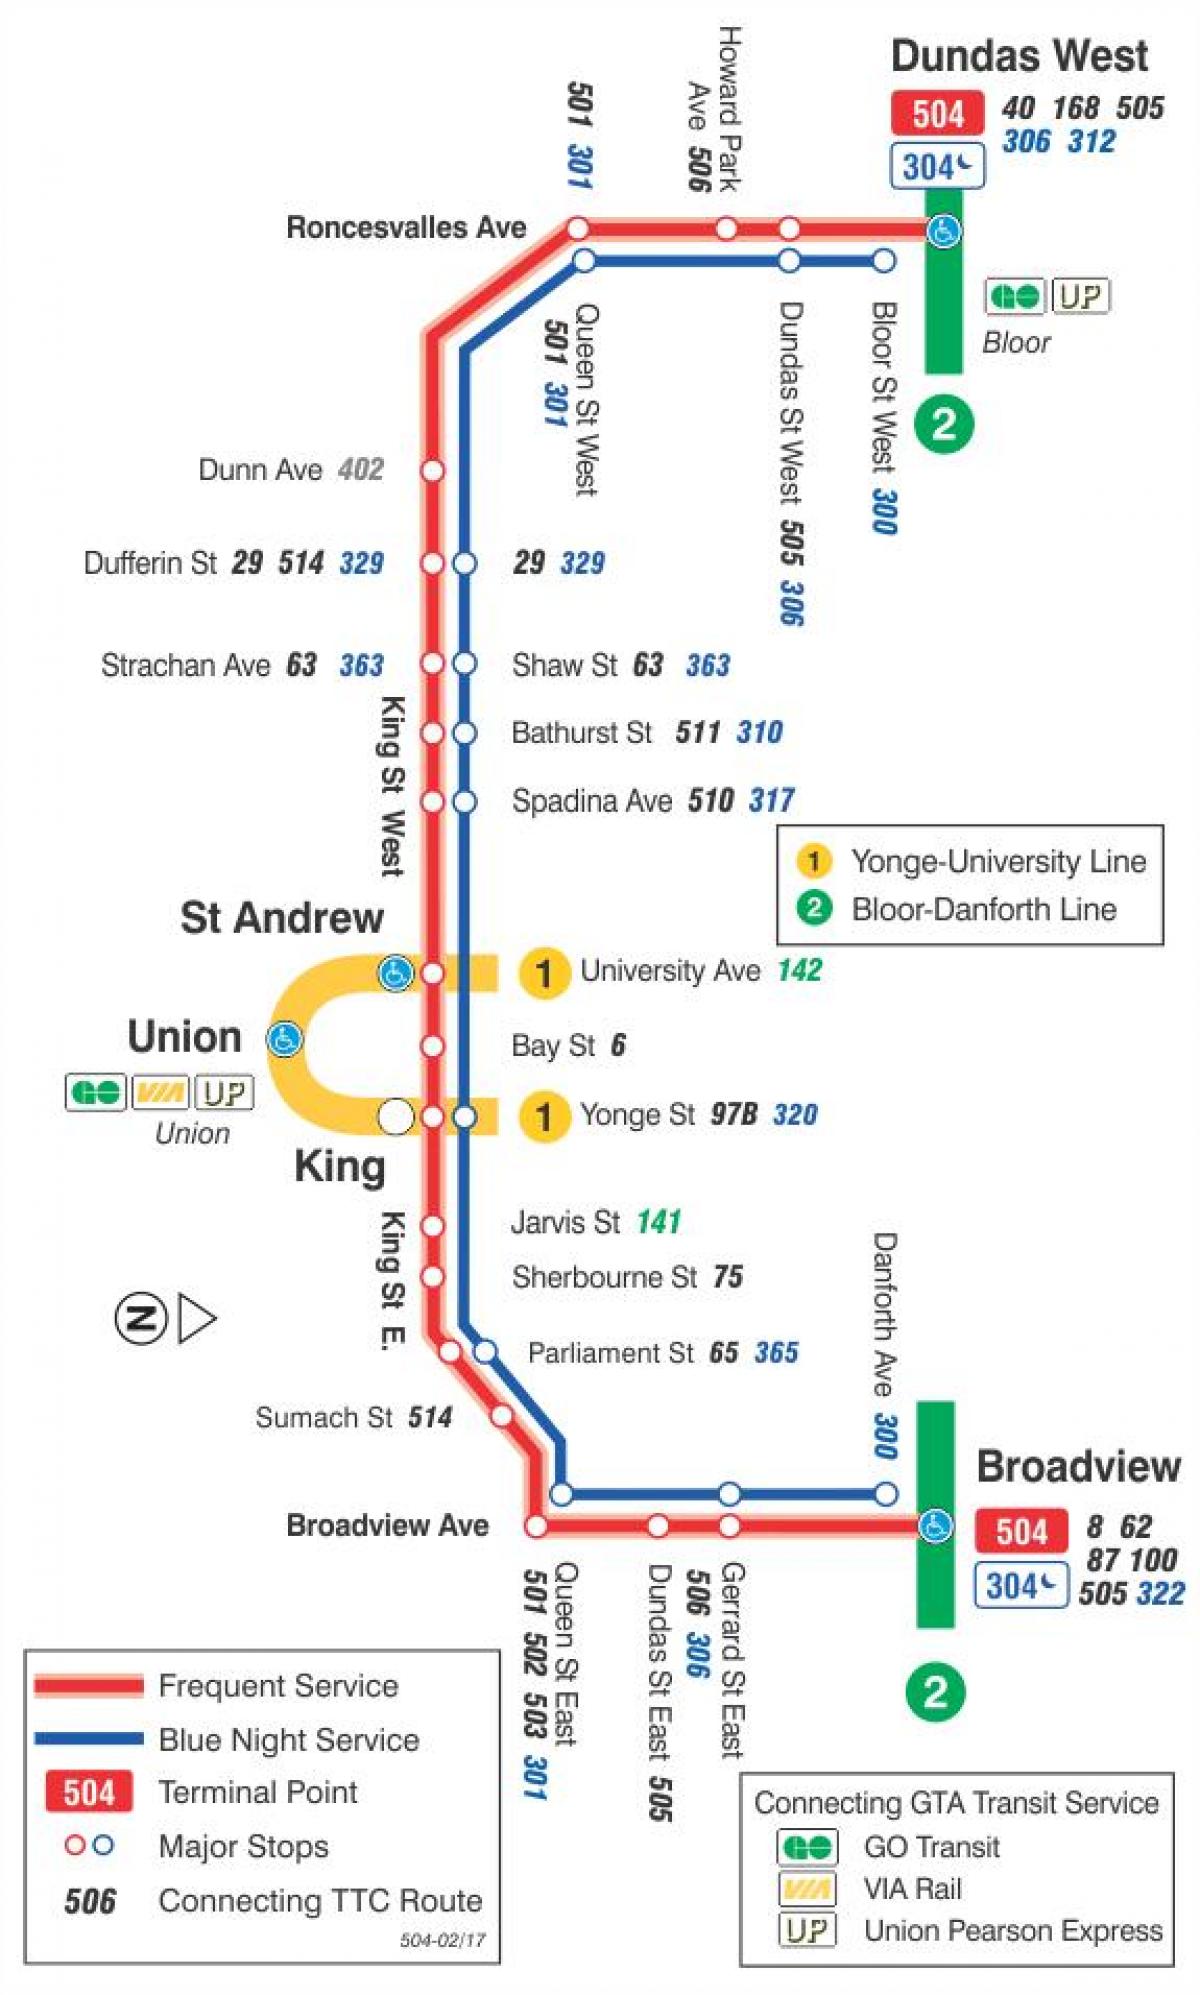 რუკა streetcar line 504 მეფე